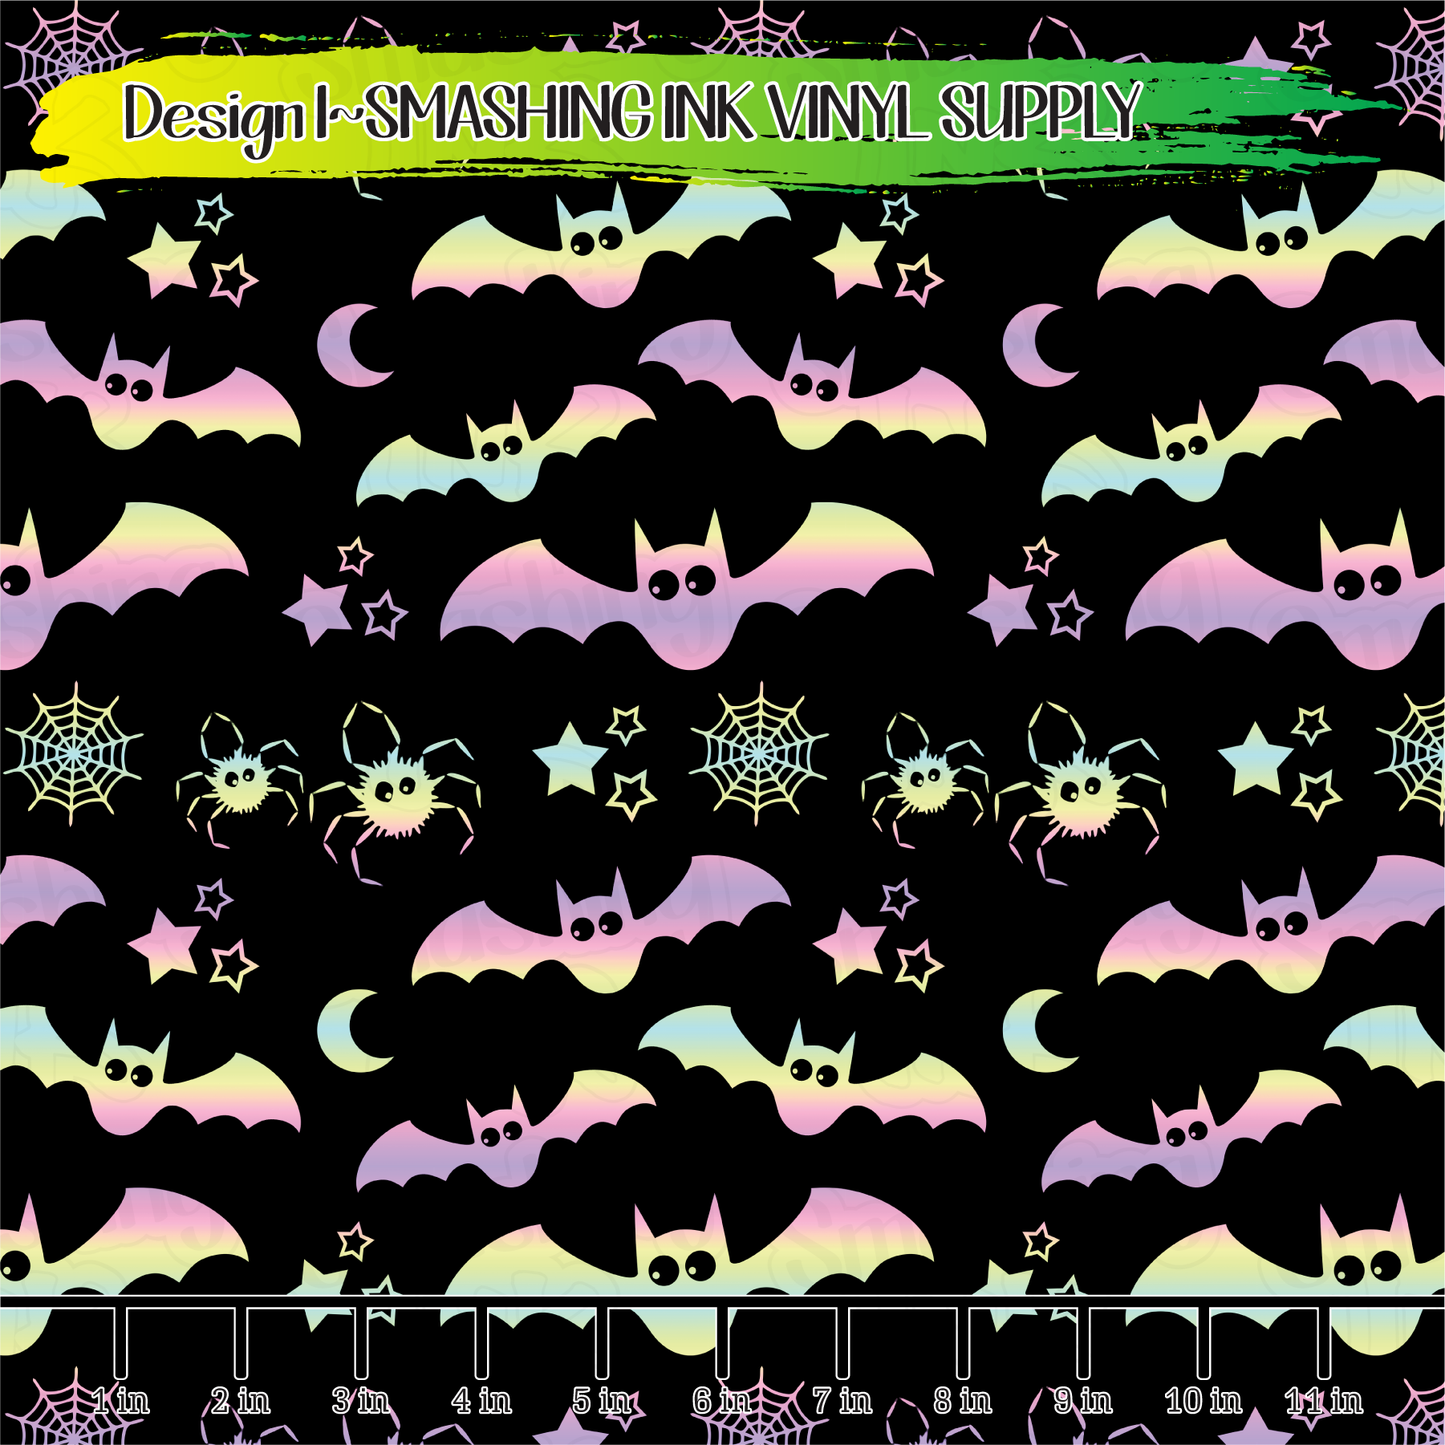 Pastel Bats ★ Laser Safe Adhesive Film (TAT 3 BUS DAYS)